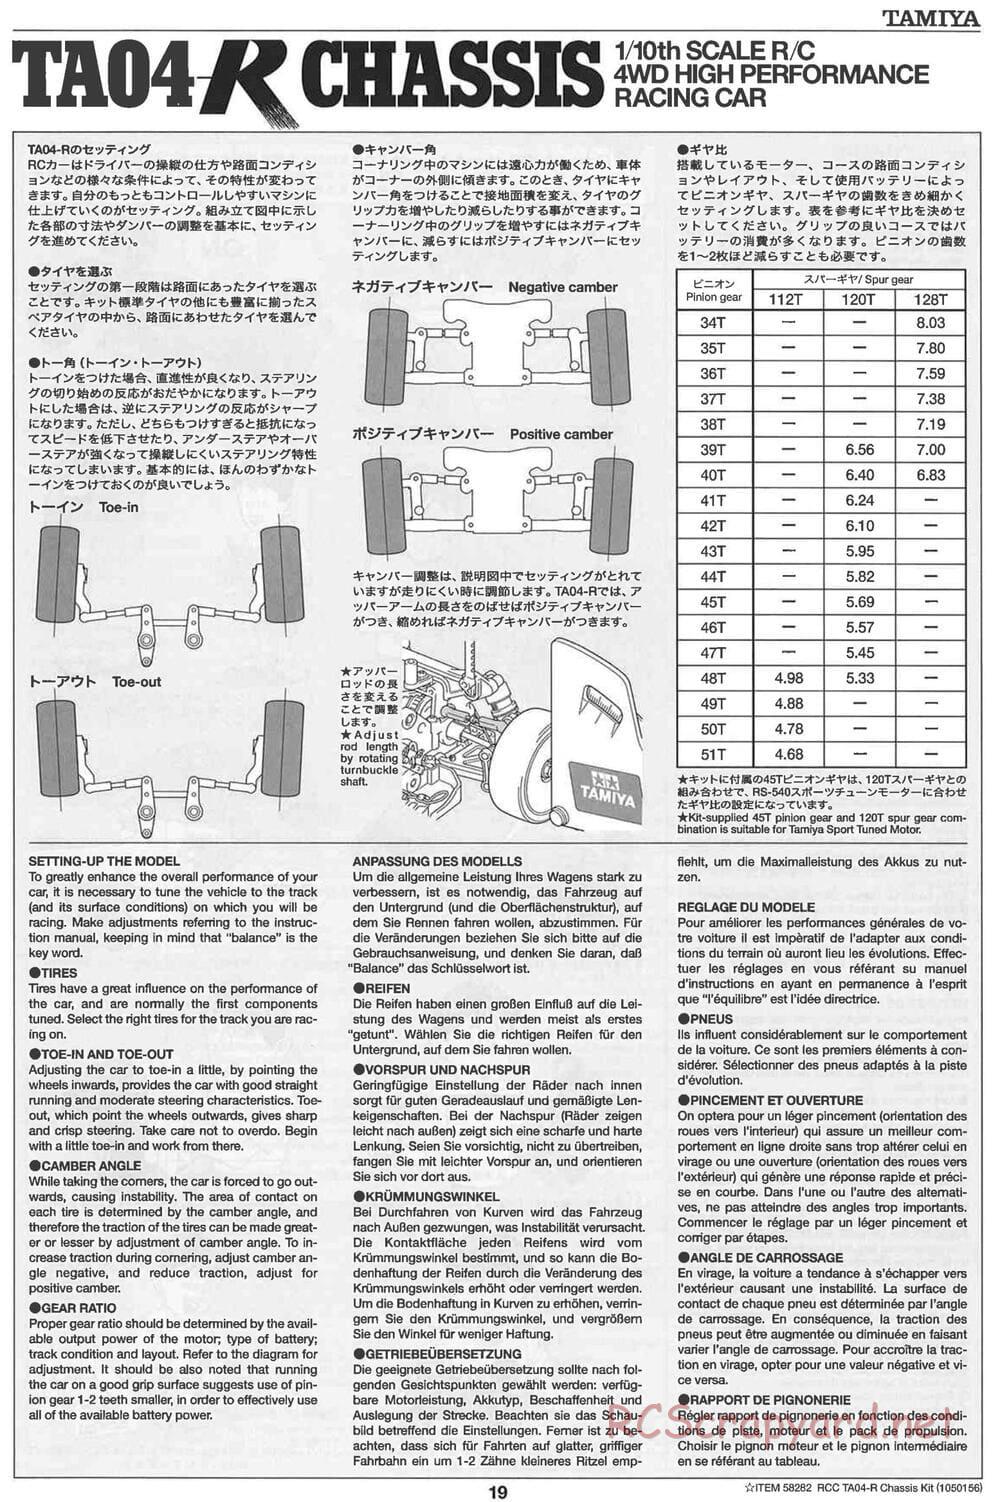 Tamiya - TA-04R Chassis - Manual - Page 19